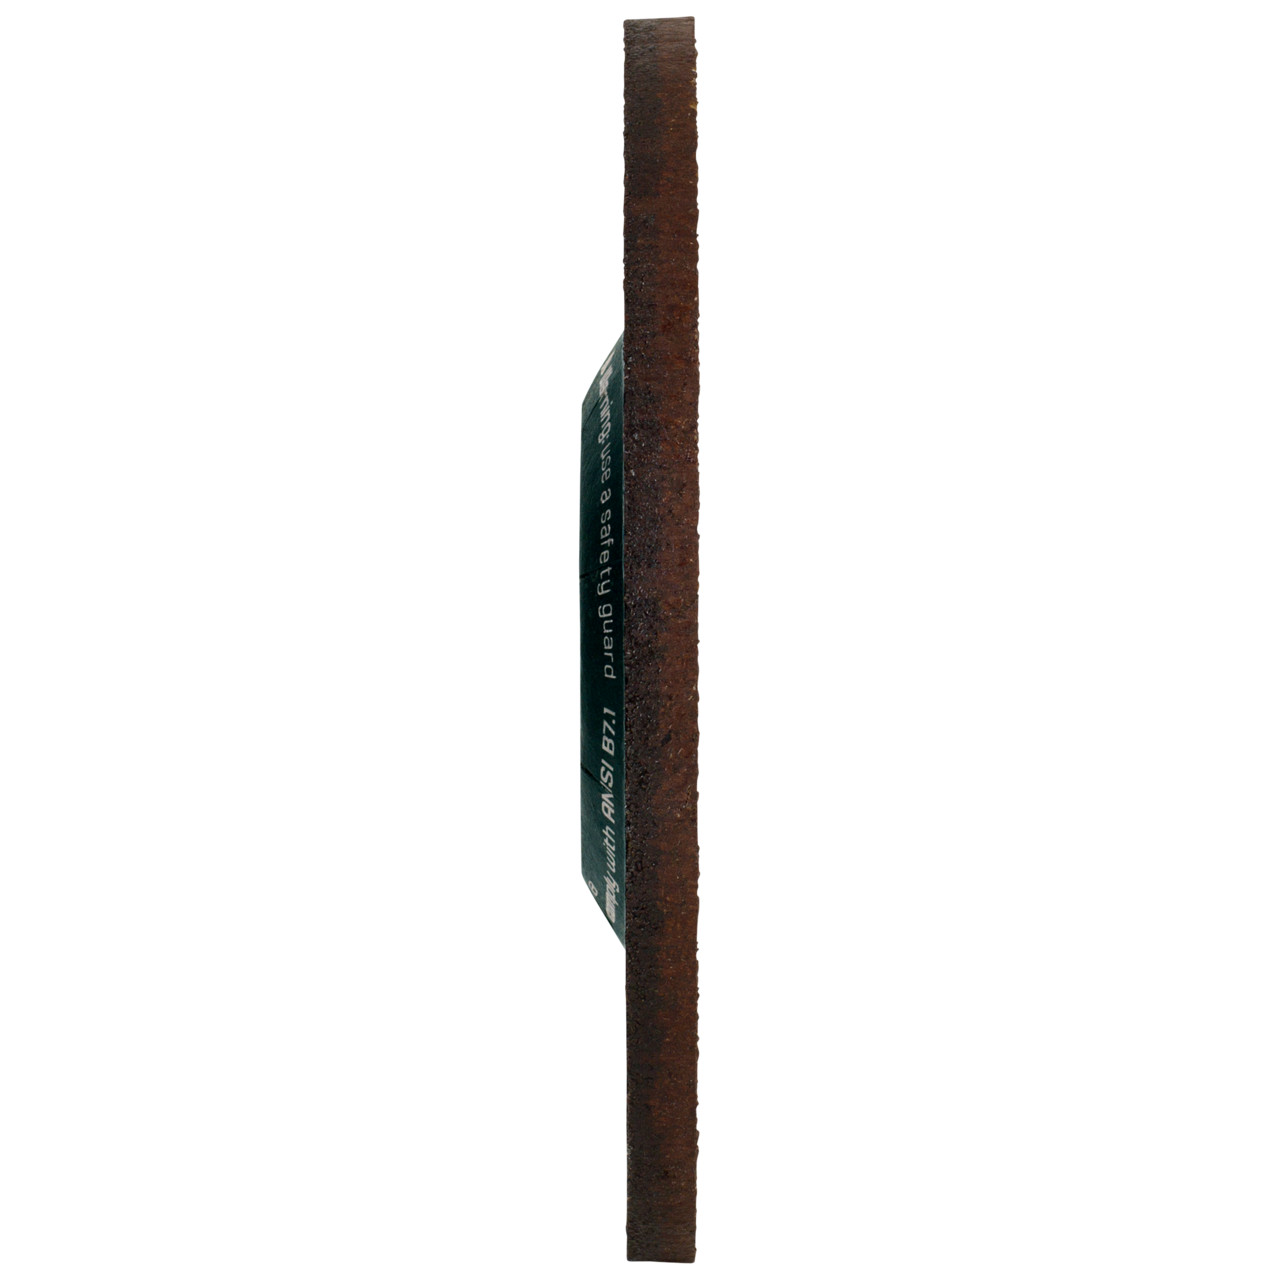 Tyrolit Karhennuslevy DxUxH 125x4x22.23 CERABOND X teräkselle ja ruostumattomalle teräkselle